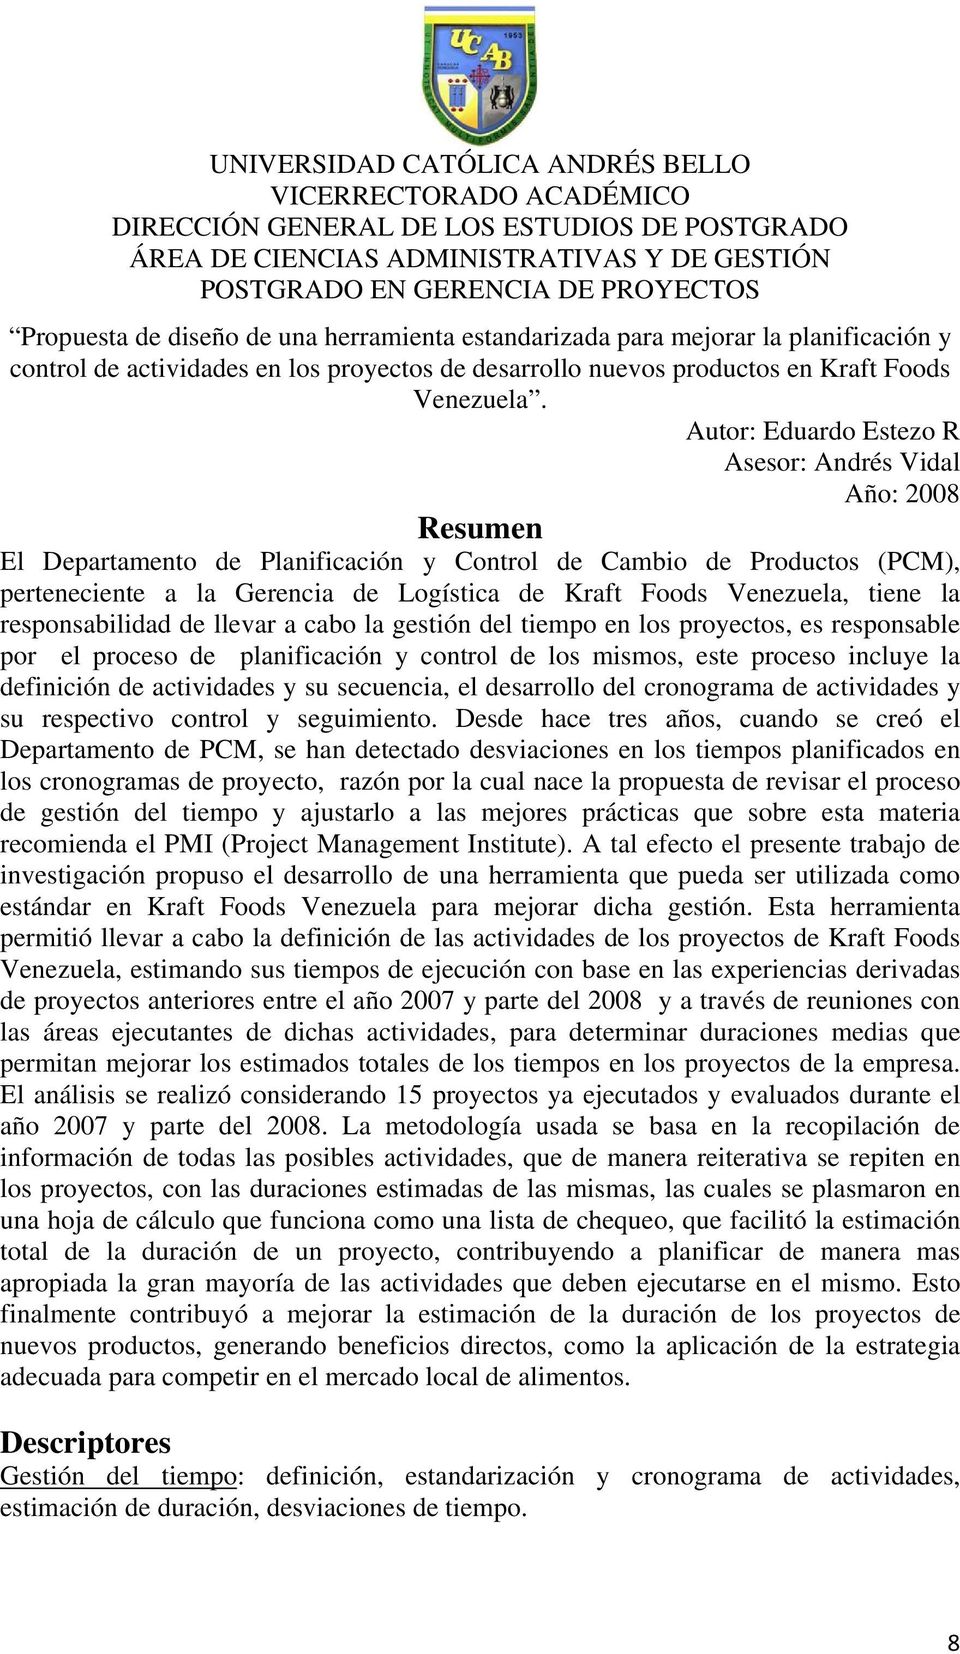 Autor: Eduardo Estezo R Asesor: Andrés Vidal Año: 2008 Resumen El Departamento de Planificación y Control de Cambio de Productos (PCM), perteneciente a la Gerencia de Logística de Kraft Foods